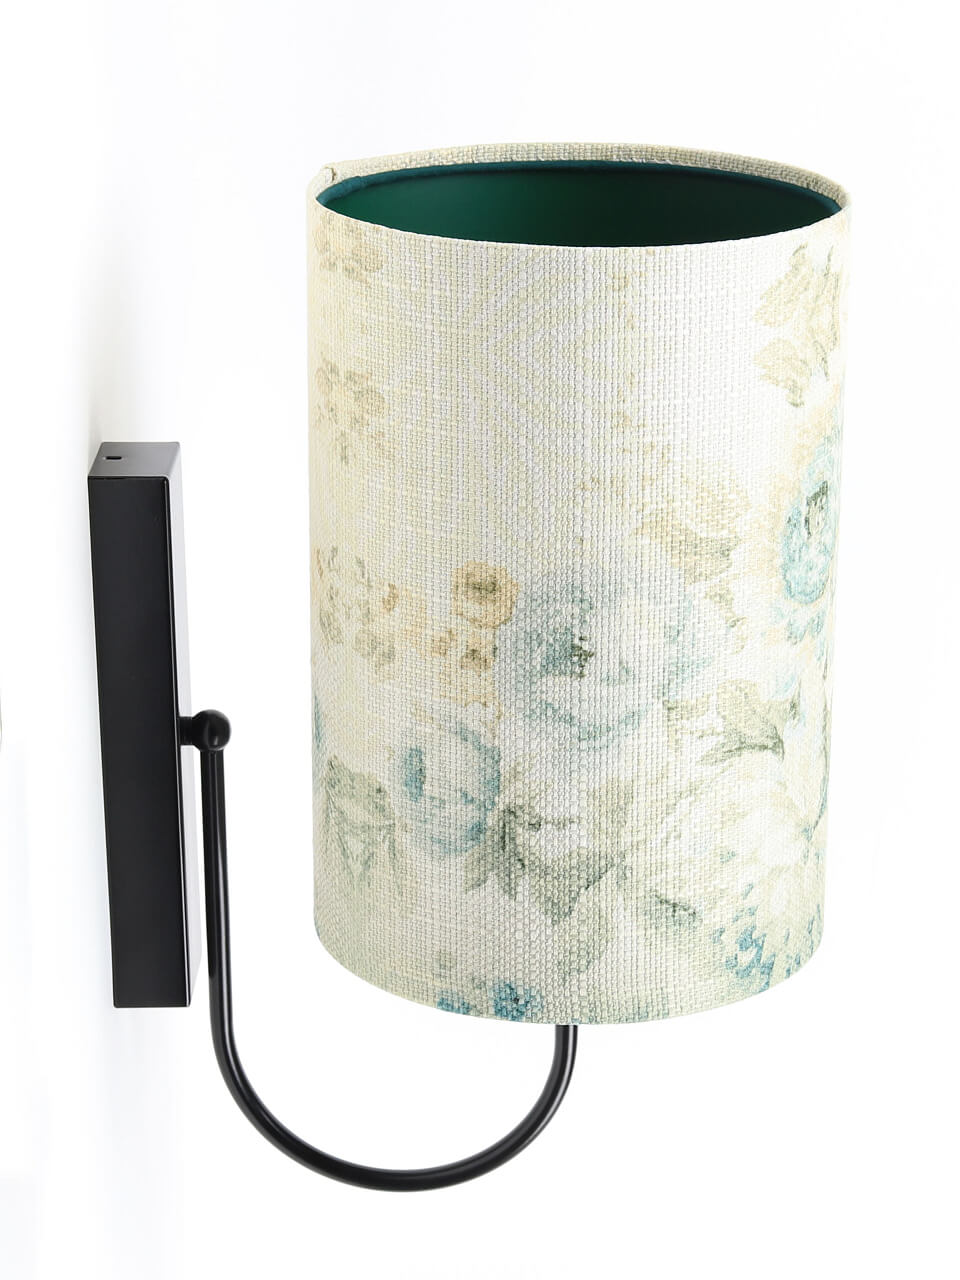 Kremowa lampa ścienna, kinkiet z walcowym abażurem w błękitne kwiaty z zielonym wnętrzem PORTLAND - BPS Koncept zdjęcie 4